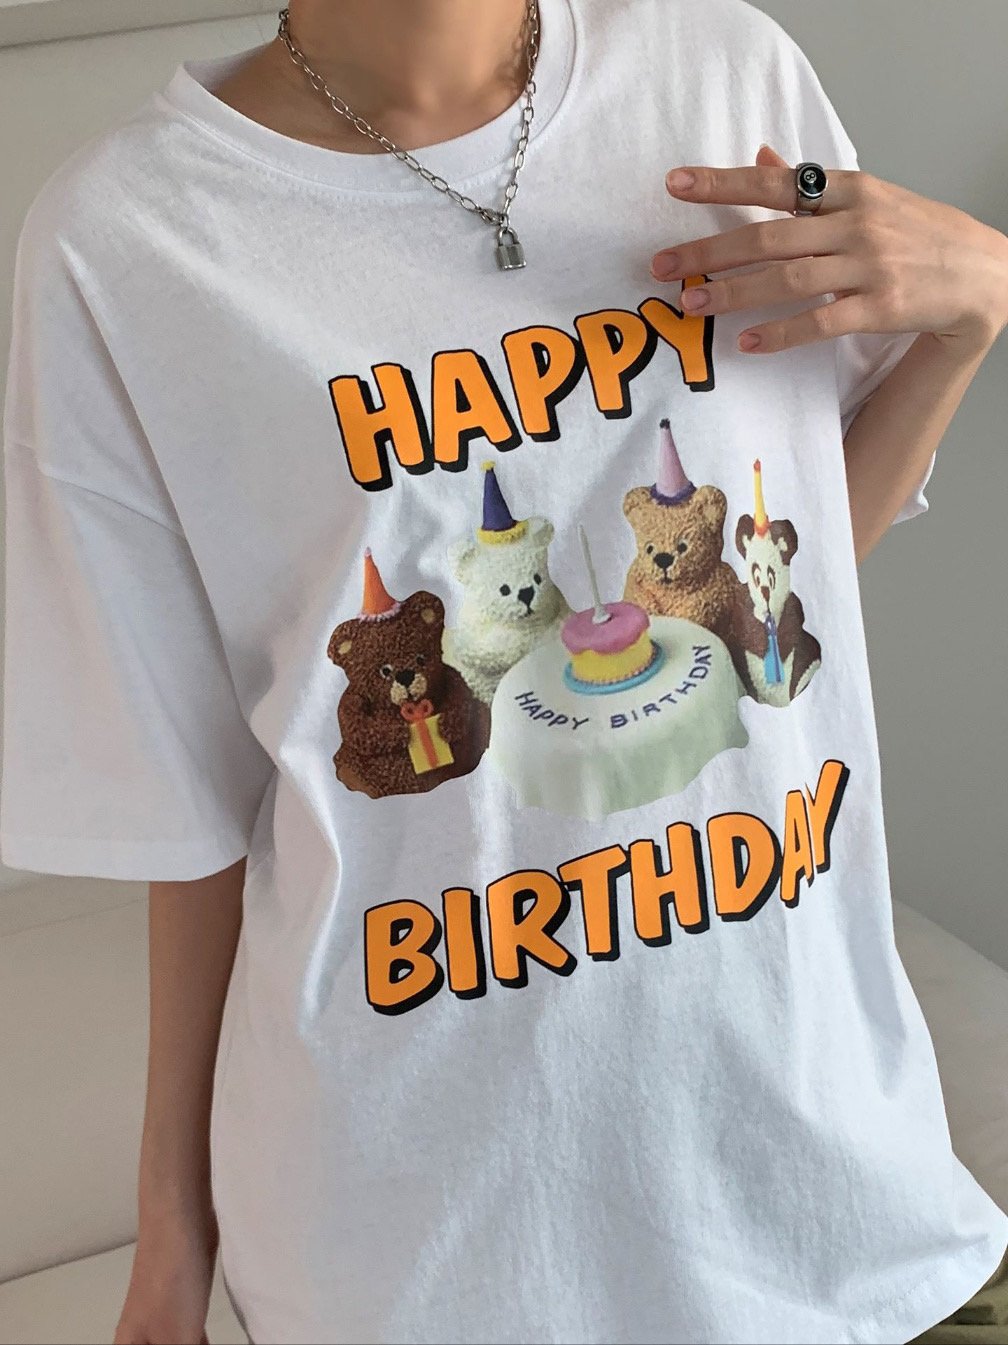 Happy Birthday Tshirts